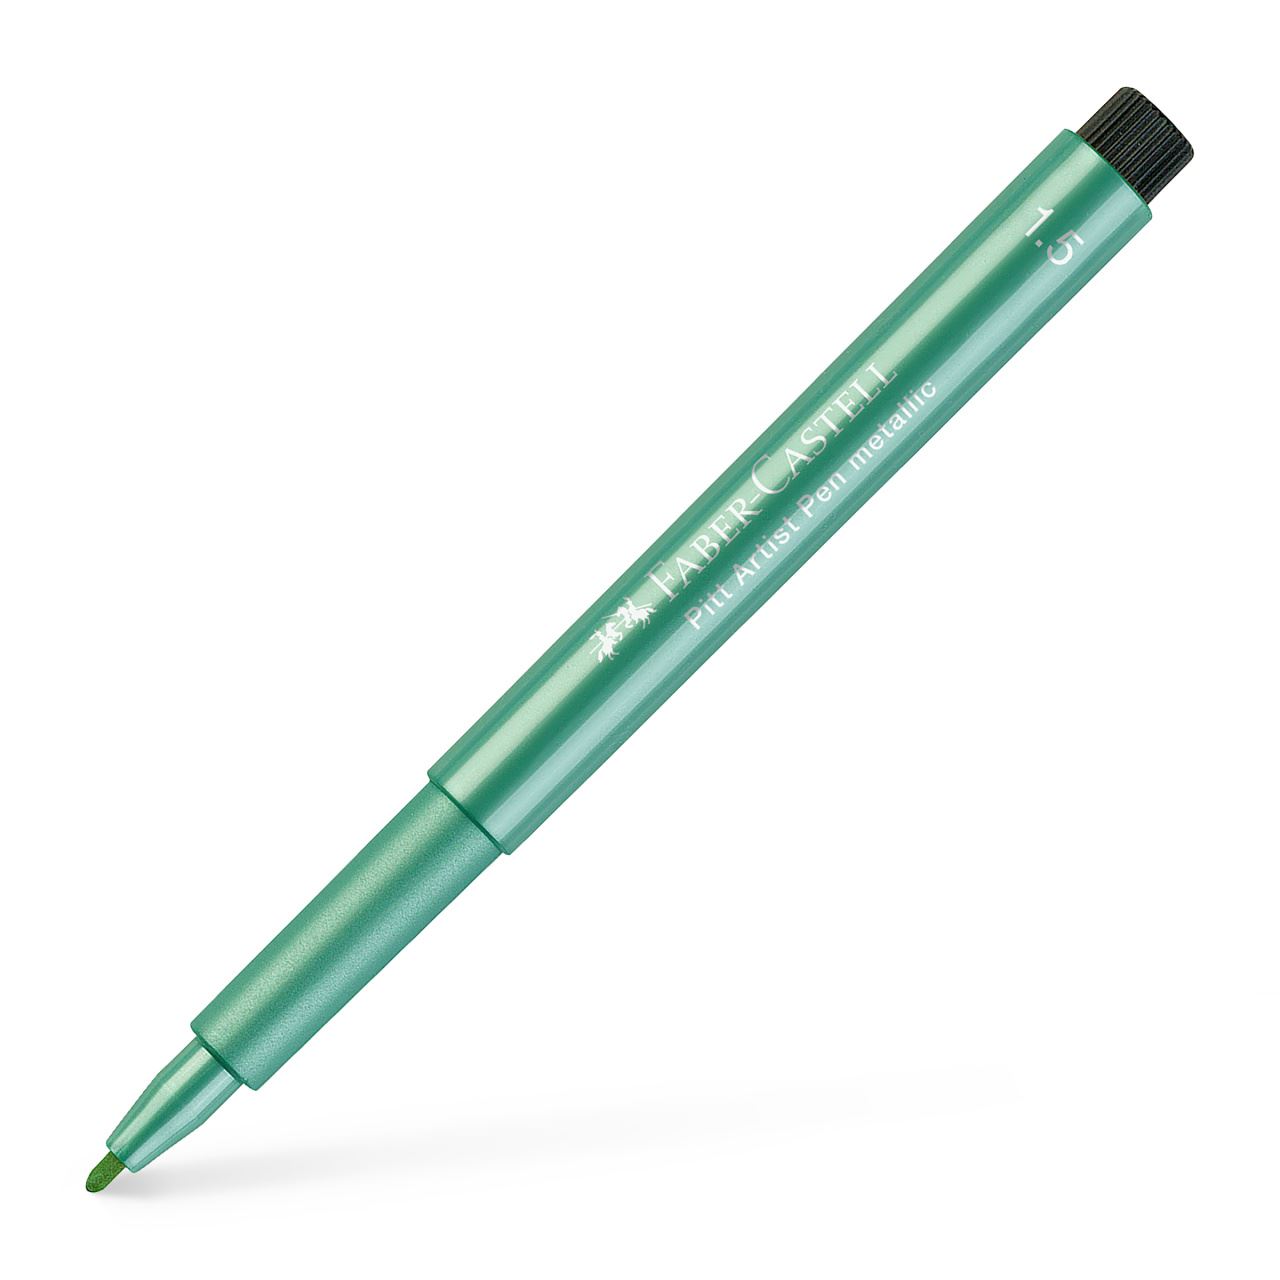 Faber-Castell - Popisovač Pitt Artist Pen B Metallic, zelená